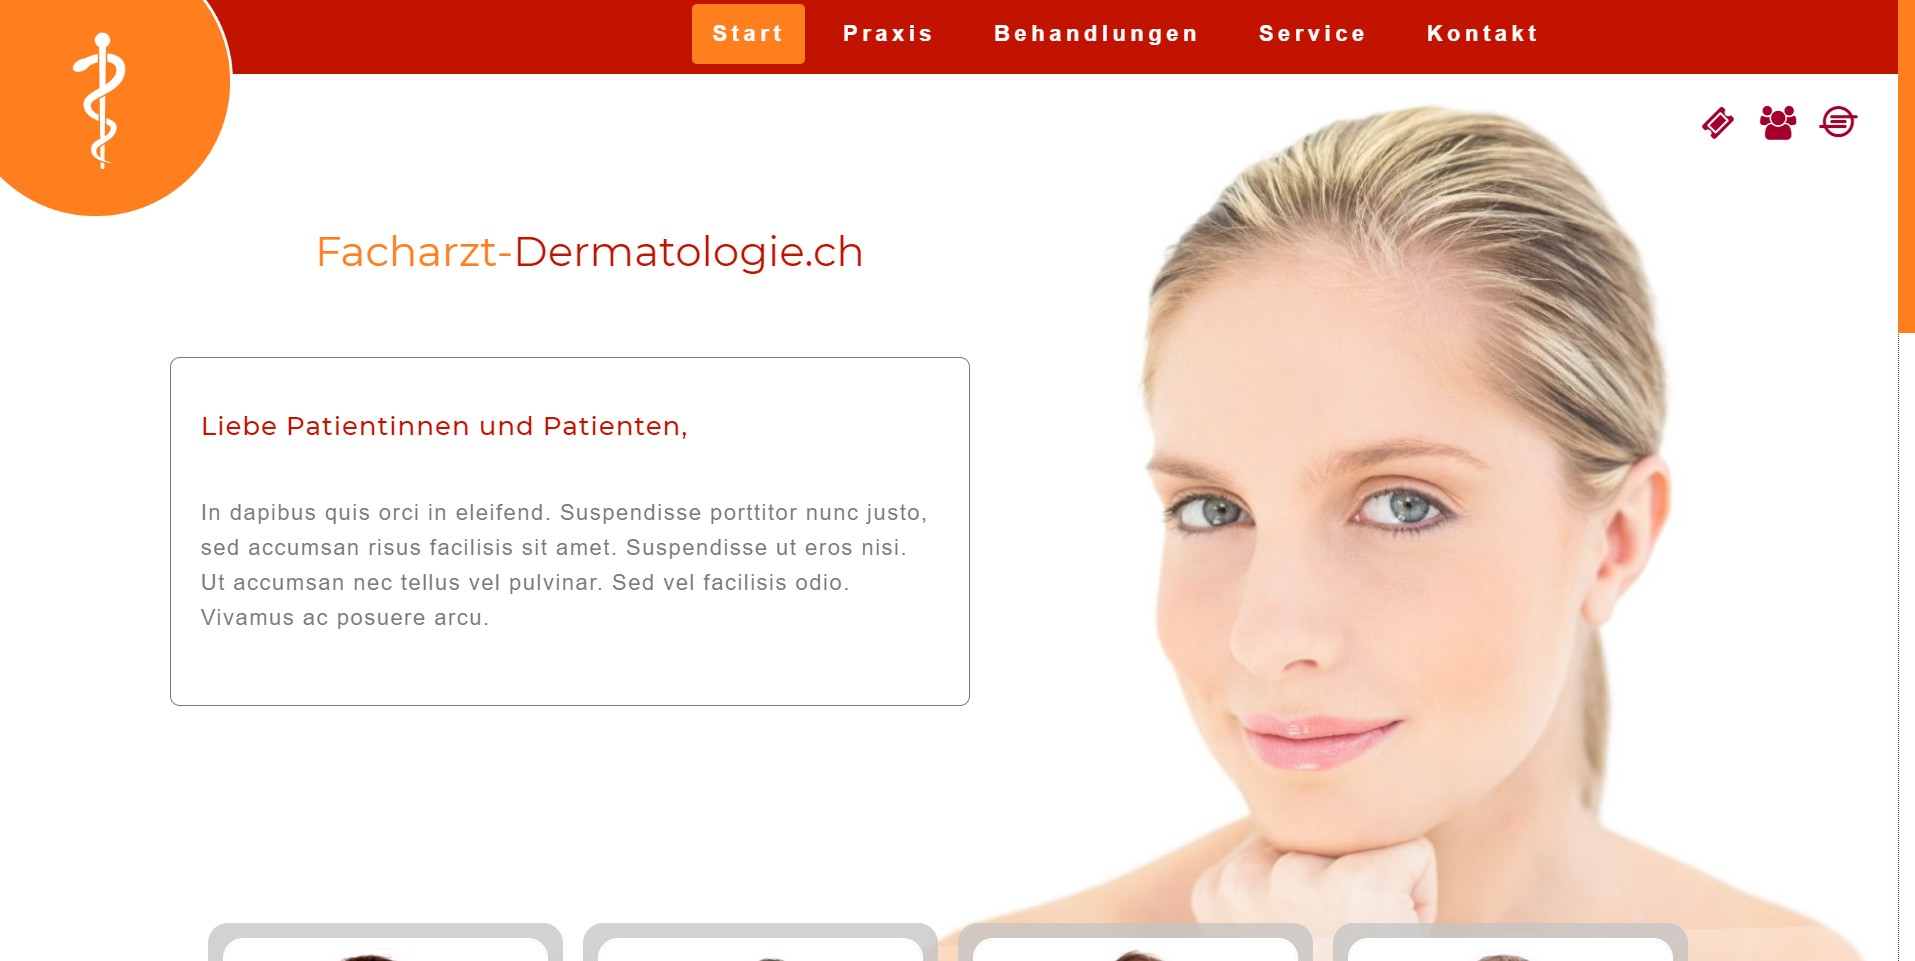 Facharzt-Dermatologie.ch